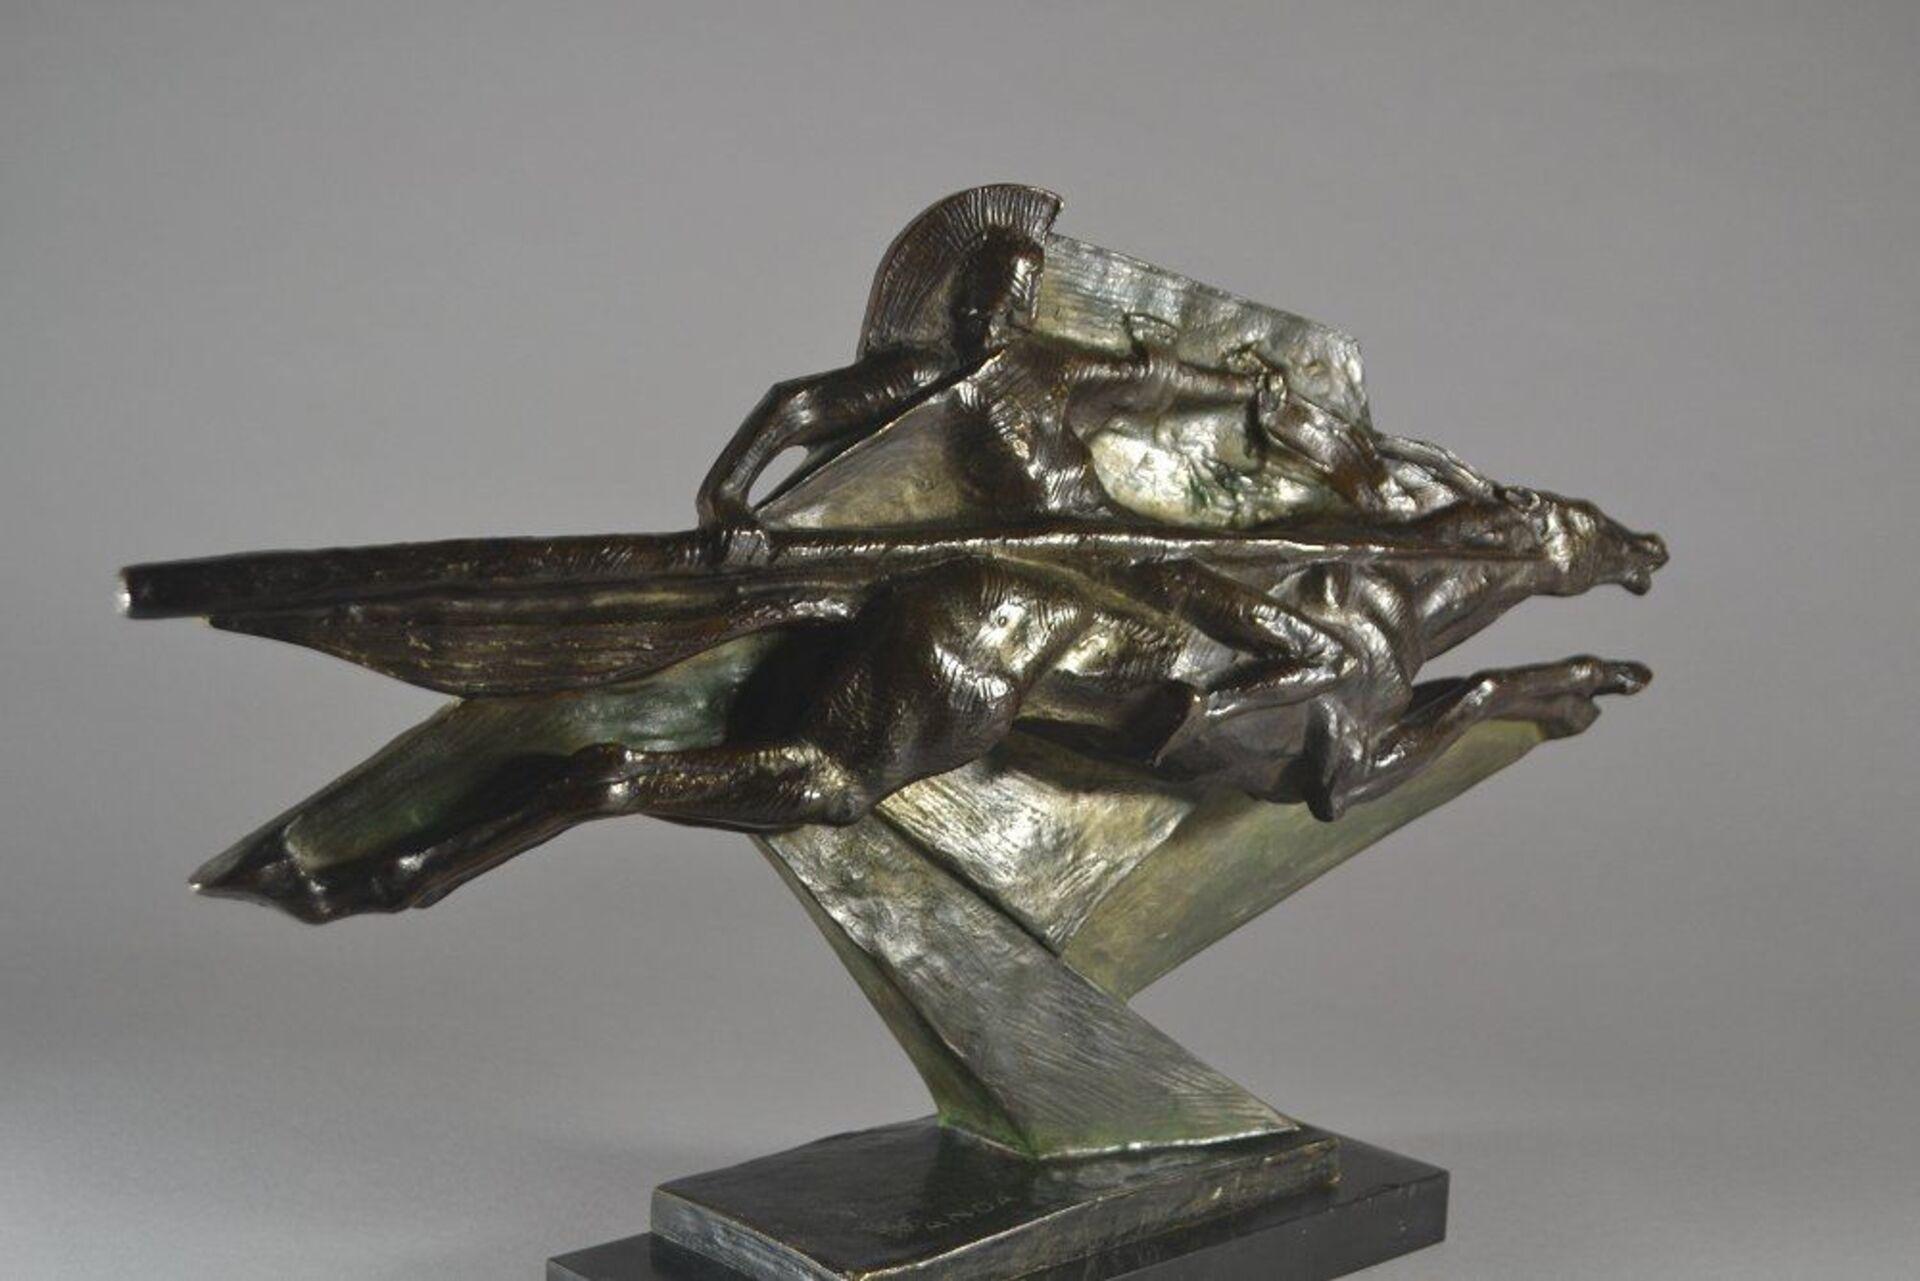 A stunning art deco modernist bronze sculpture of a warrior.
Signed 